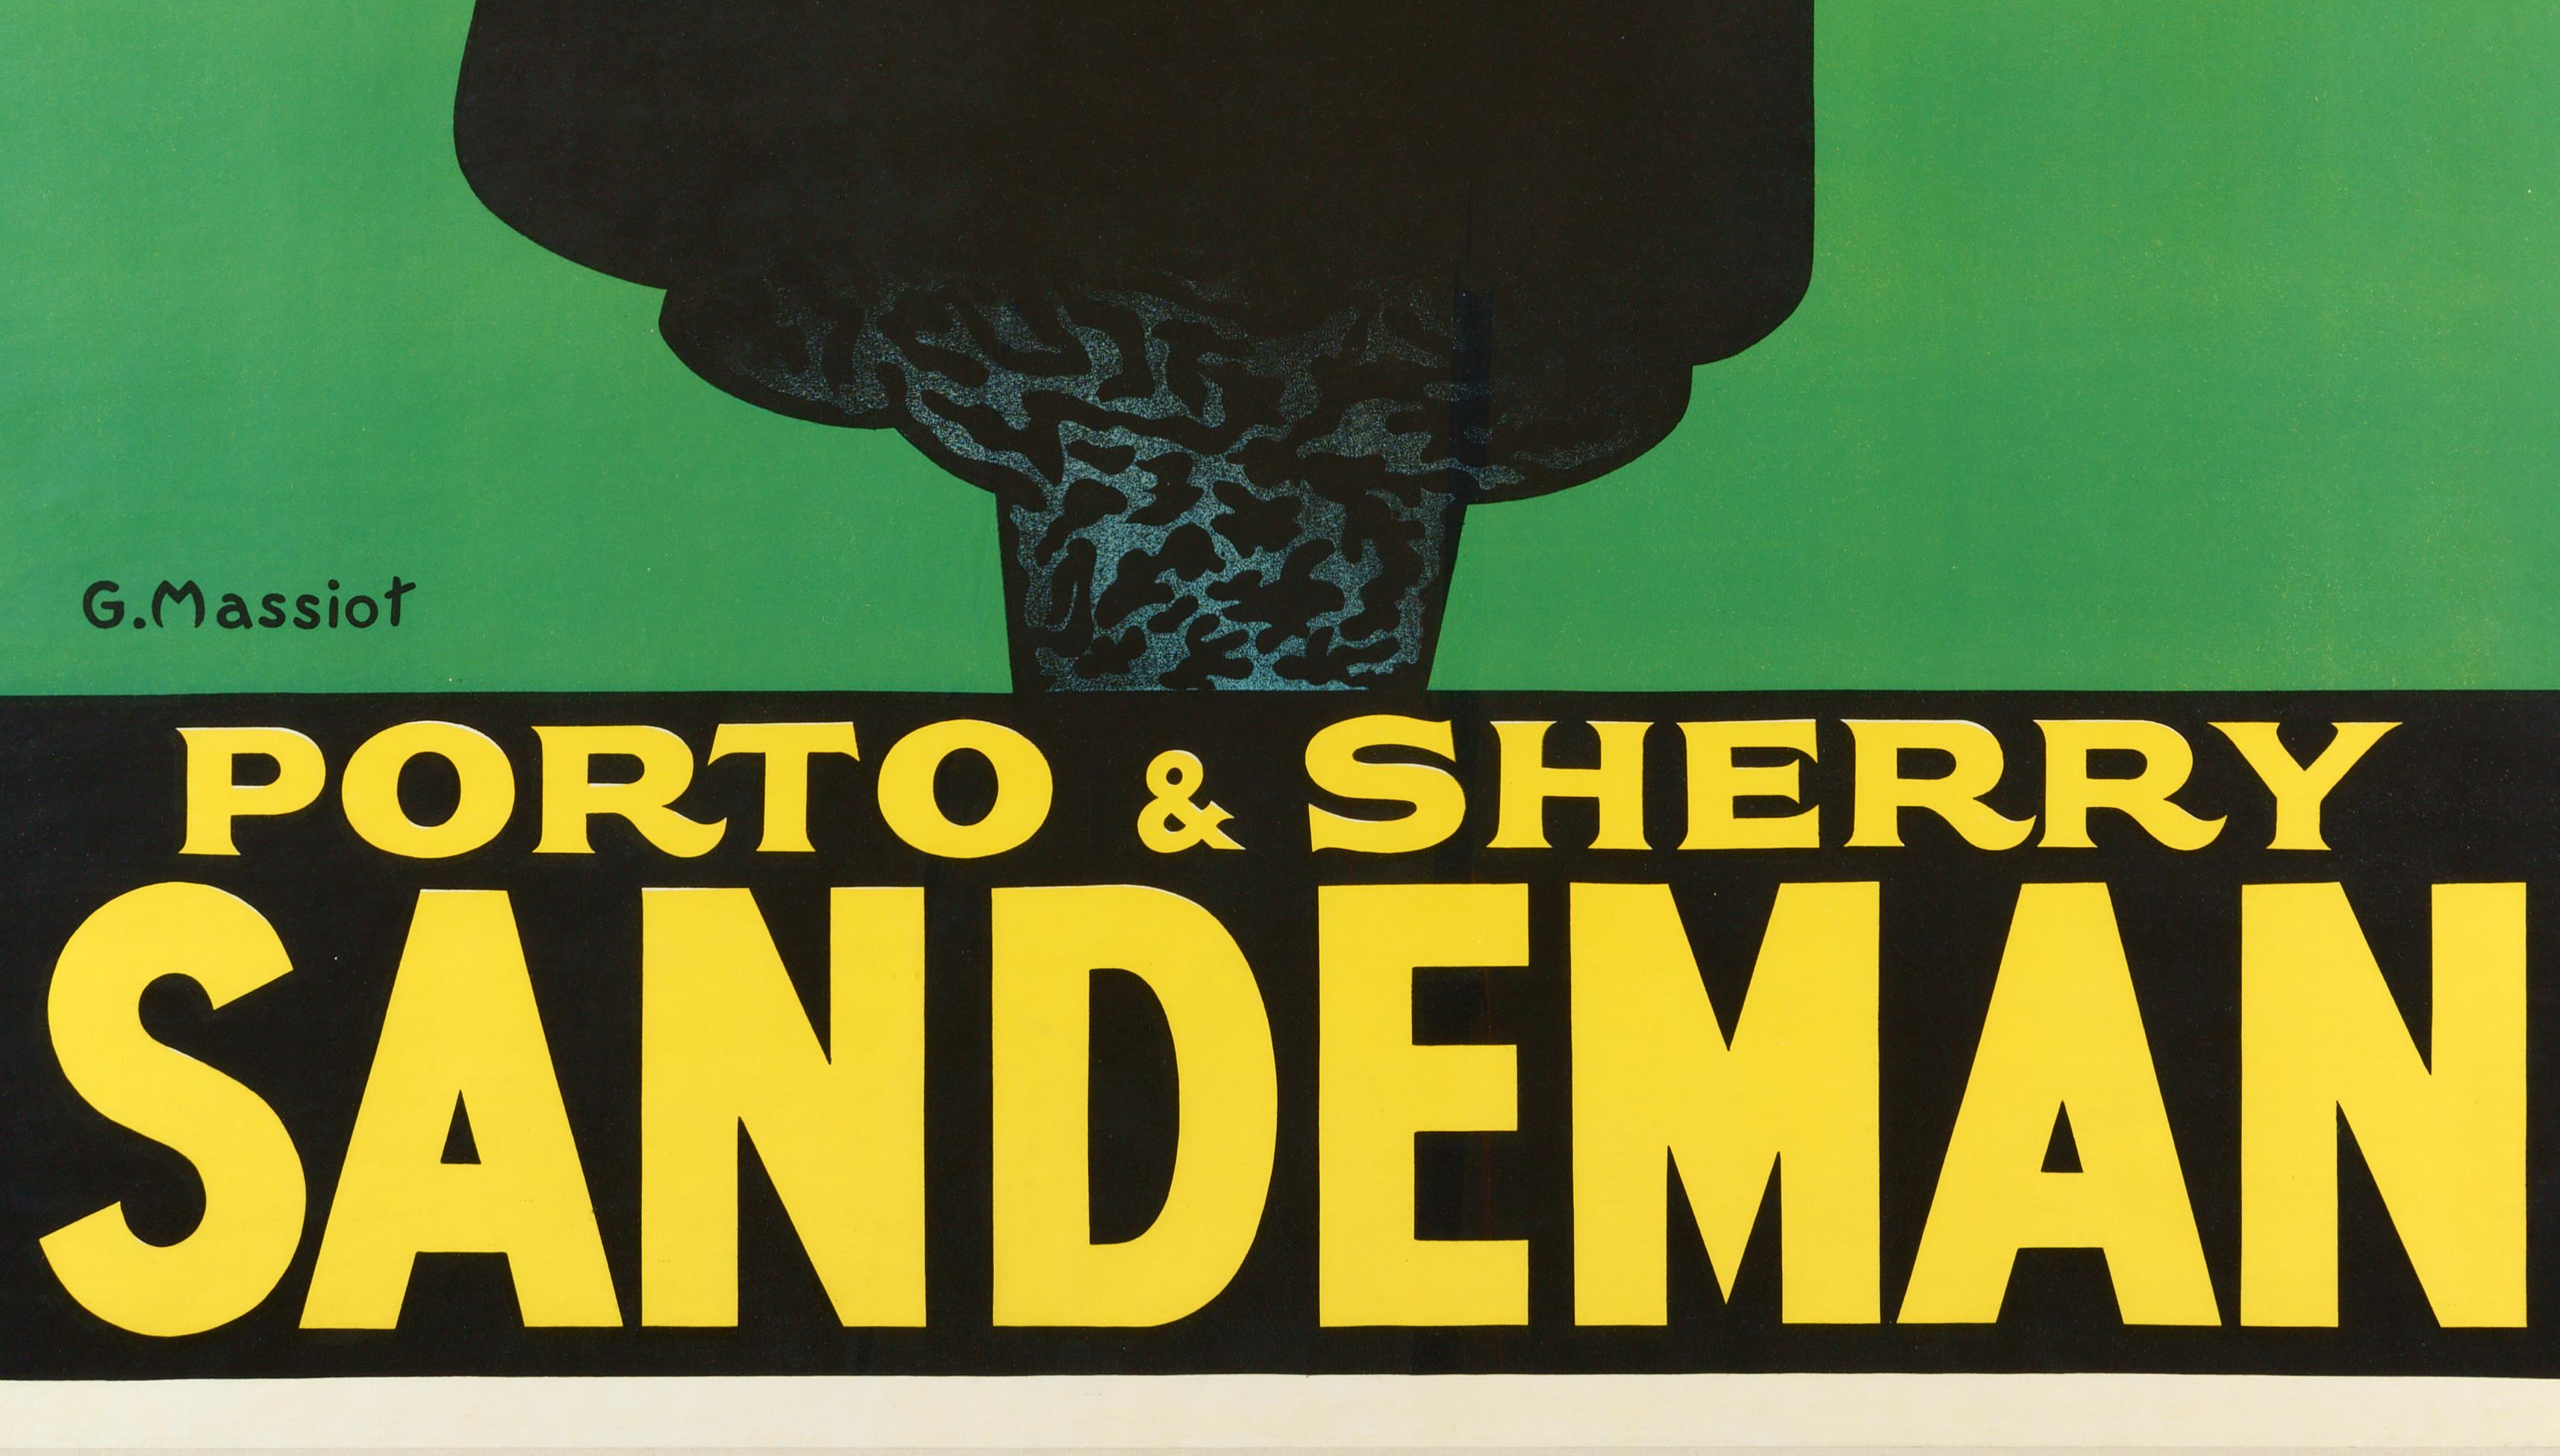 Sandeman  Porto & Sherry - Ikonisches Originalplakat (Schwarz), Figurative Print, von George Massiot Brown